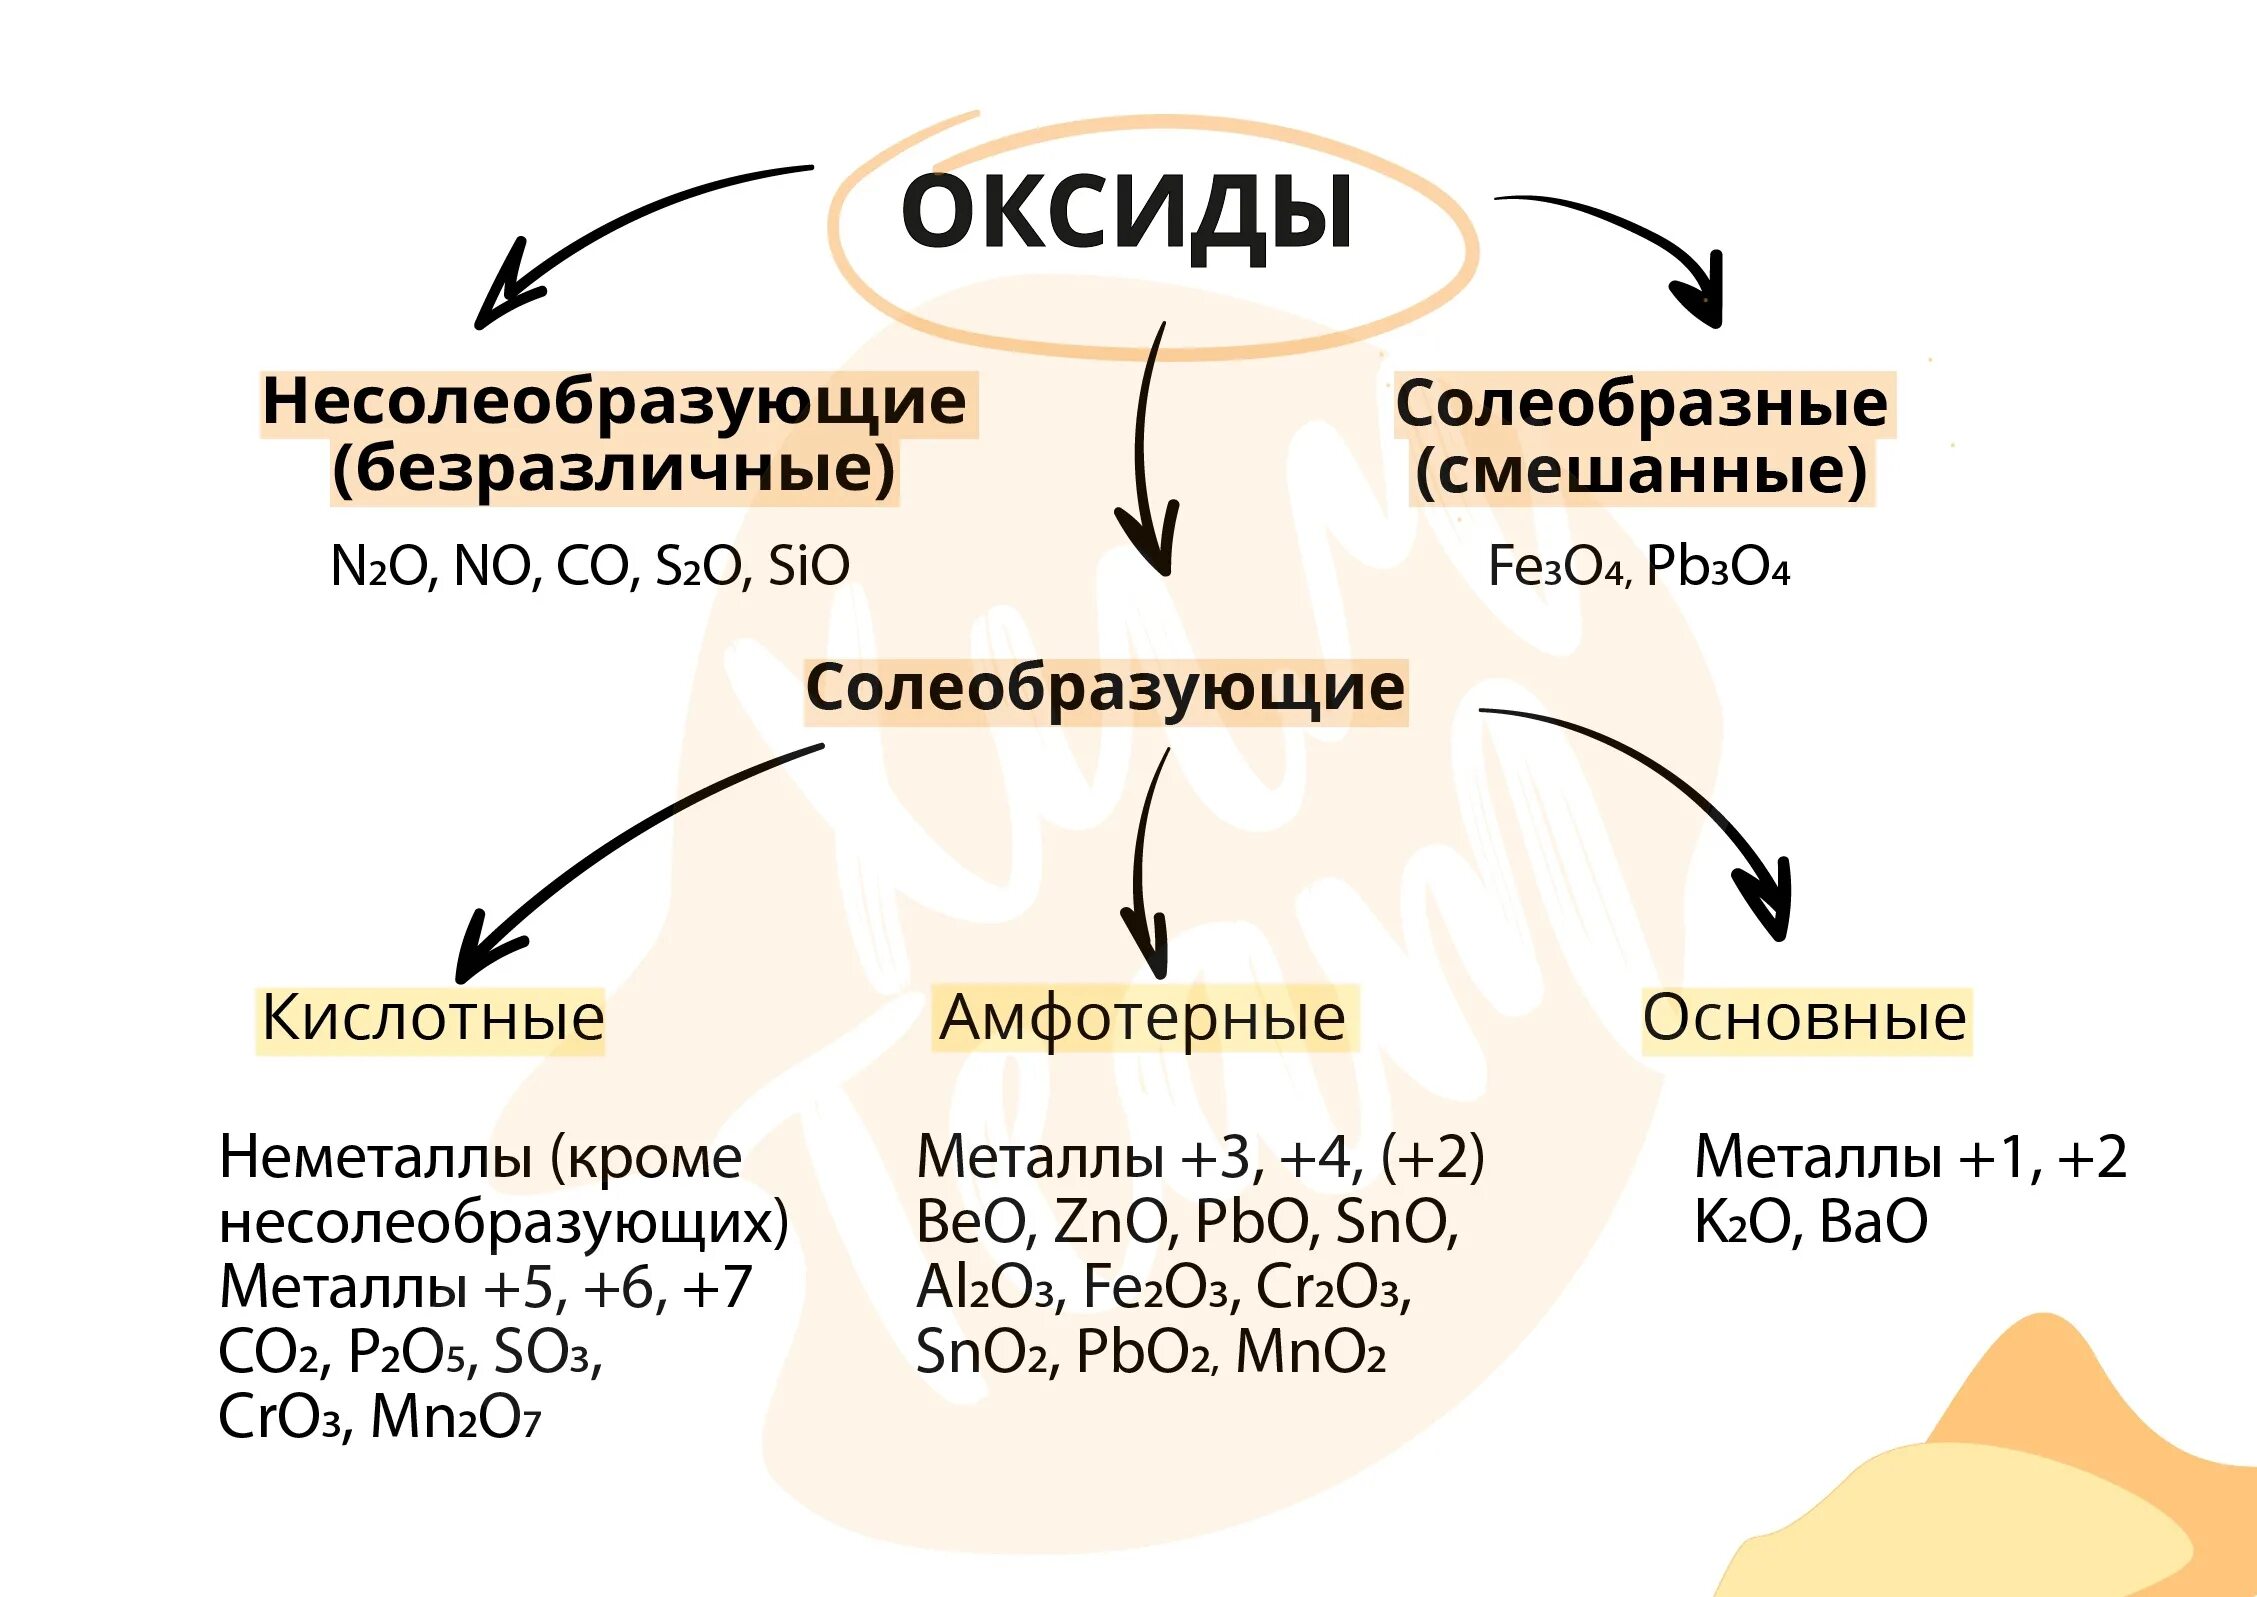 Несолеобразующие оксиды. Примеры несолеобразующих оксидов. Классификация оксидов несолеобразующие. Основные оксиды и несолеобразующие оксиды. Sio2 несолеобразующий оксид